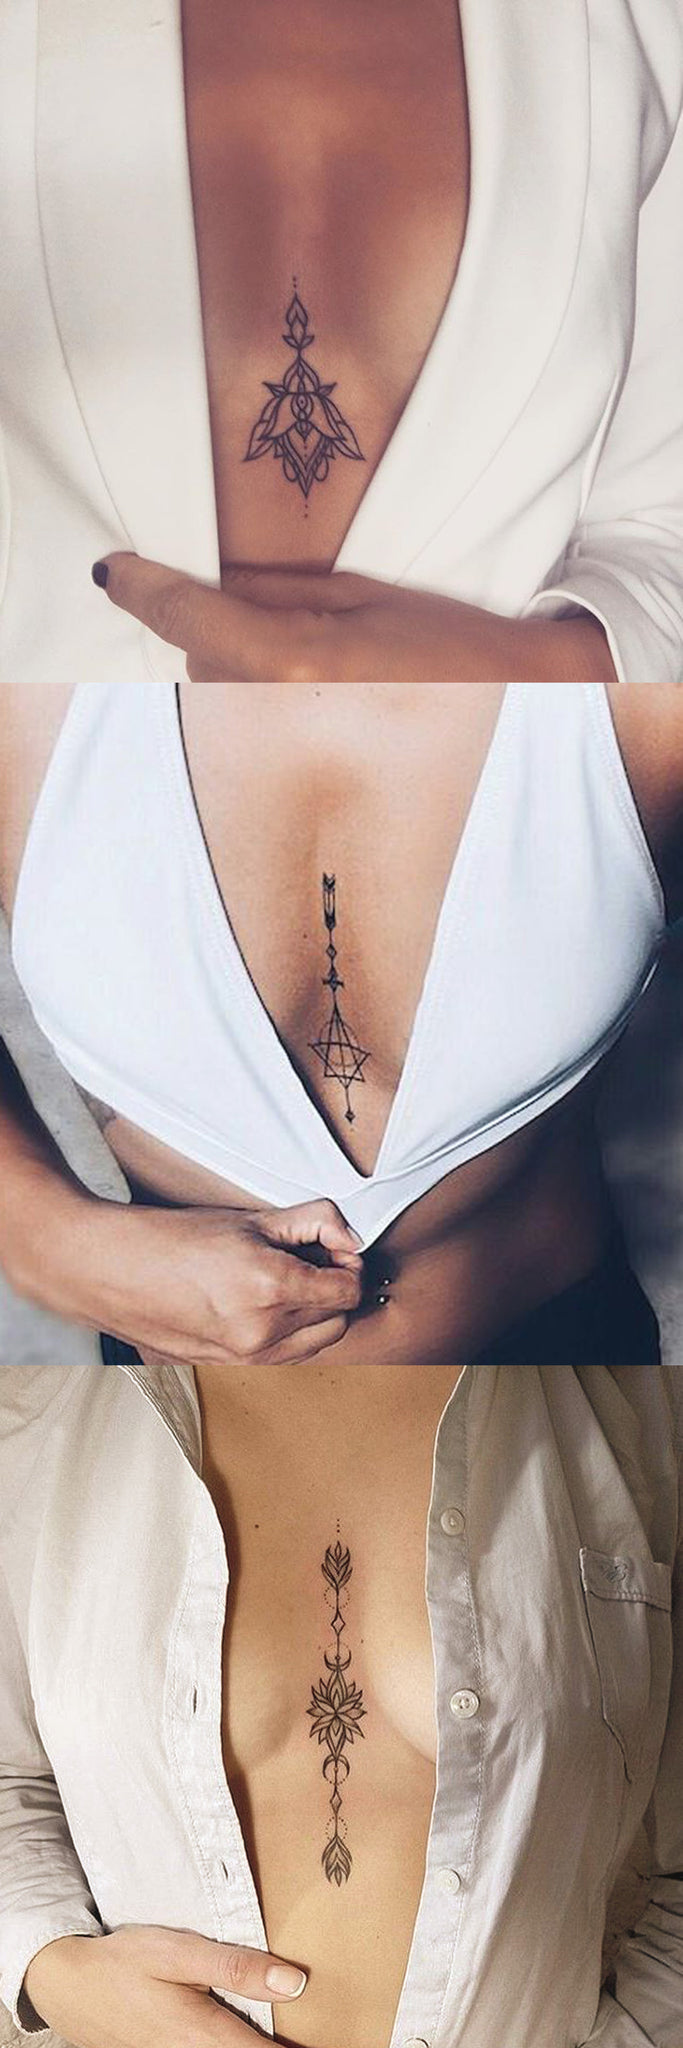 Arrow Sternum Tattoo Ideas for Women at MyBodiArt.com - Unalome Scared Geometric Tatt - Lotus Boob Tat 